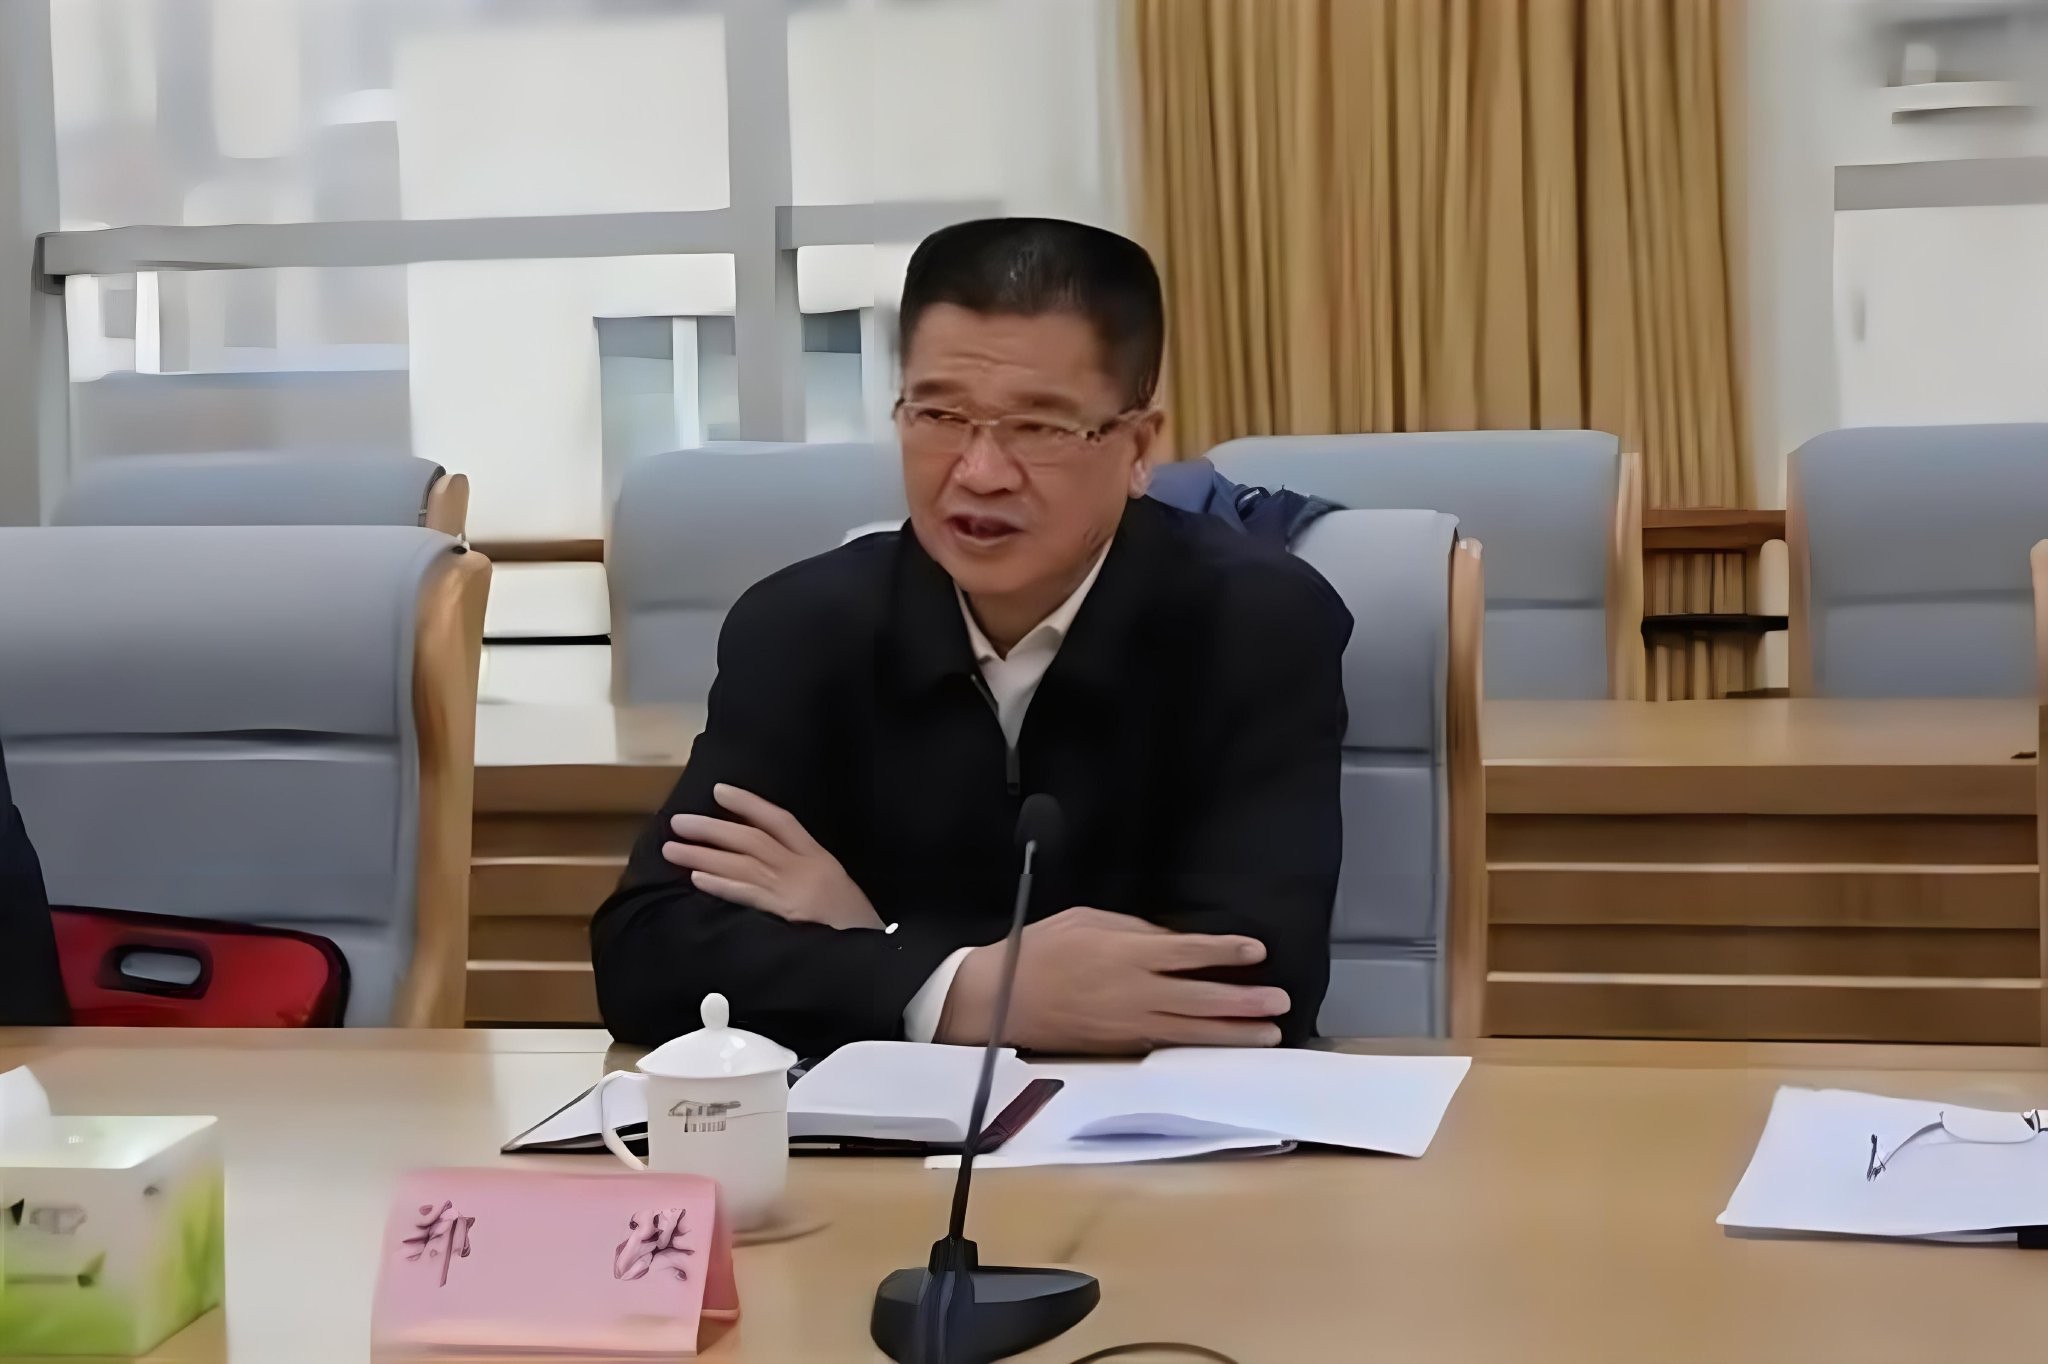 重庆市人大常委会原副主任郑洪被提起公诉 被控受贿超20年